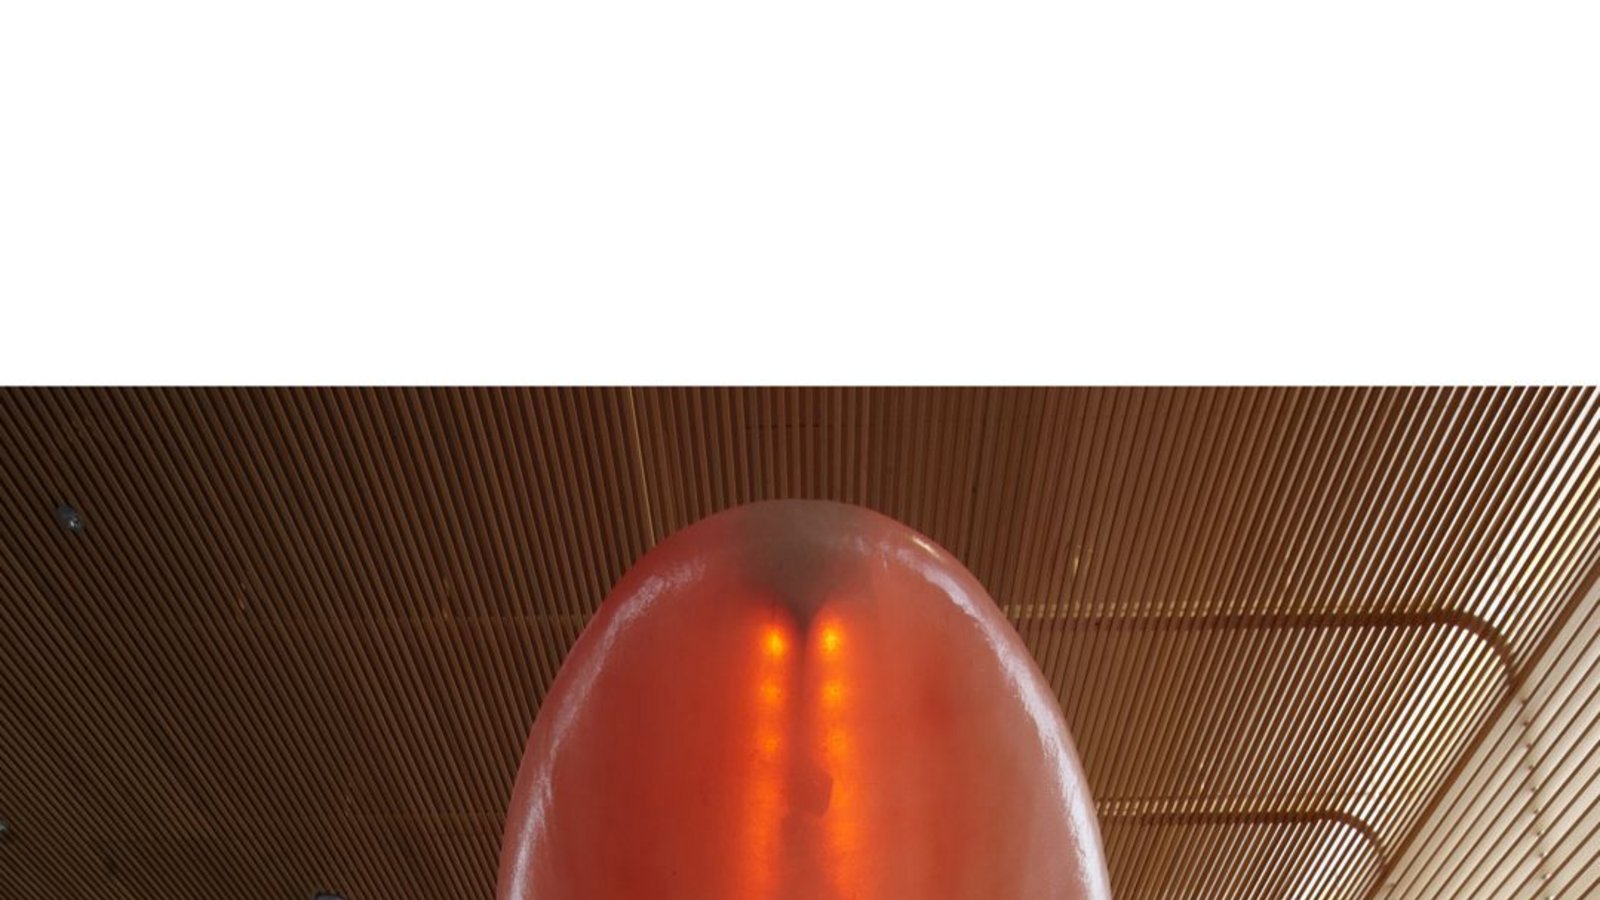 Die  Vita-Sol-Therme in Bad Salzuflen, Nordrhein-Westfalen, wurde von 2008 bis 2009 saniert  – mit neuer Regendusche, die rot leuchten kann.Foto: 4a Architekten/Uwe Ditz